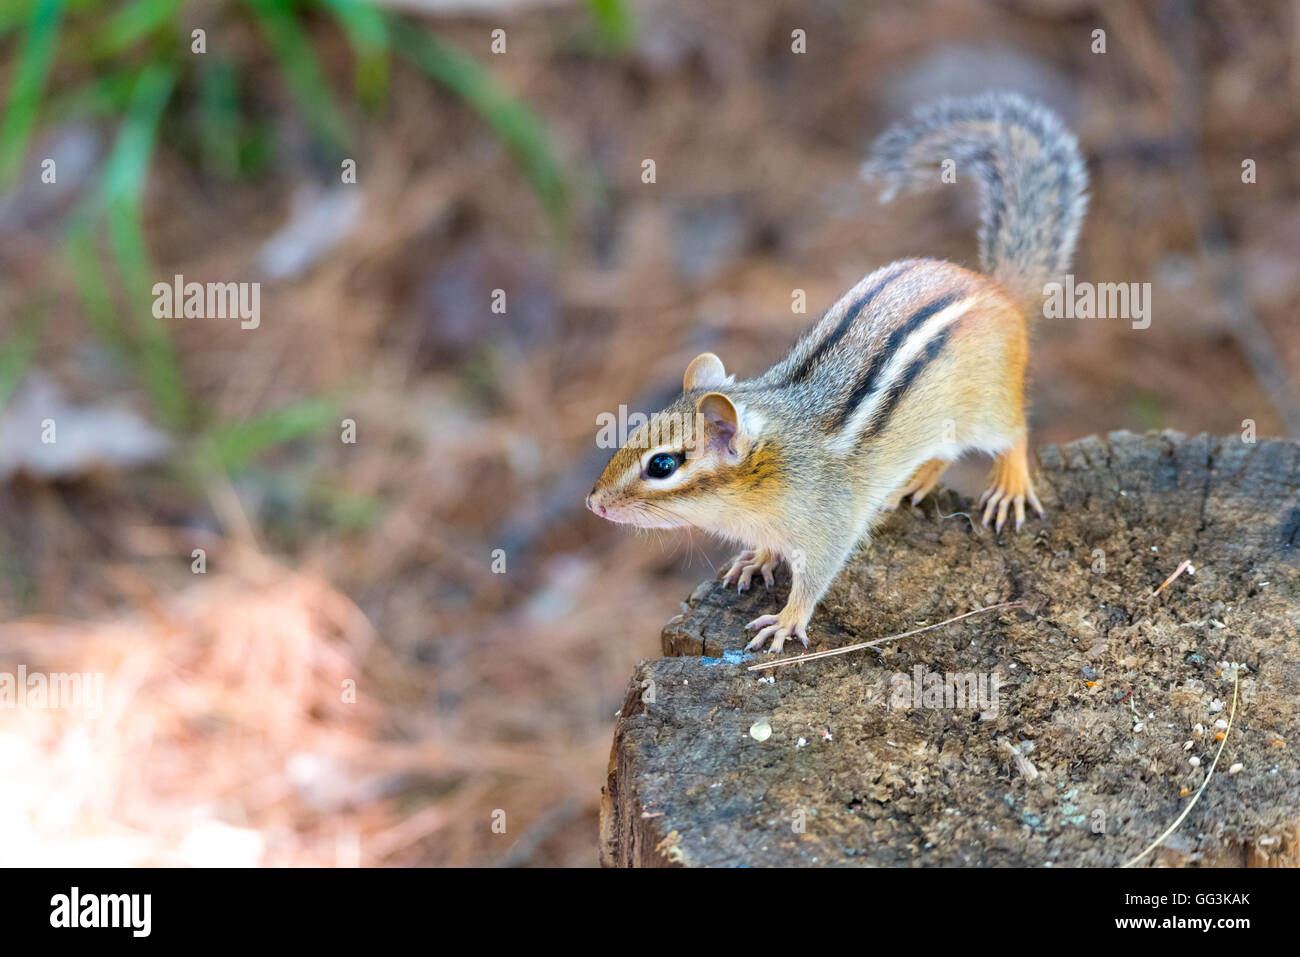 Östliche Chipmunk (Tamias) sitzt auf einem hölzernen stumpf.  Kleine Eichhörnchen wird angehalten, um seine Sommer sonnige Umgebung überblicken. Stockfoto